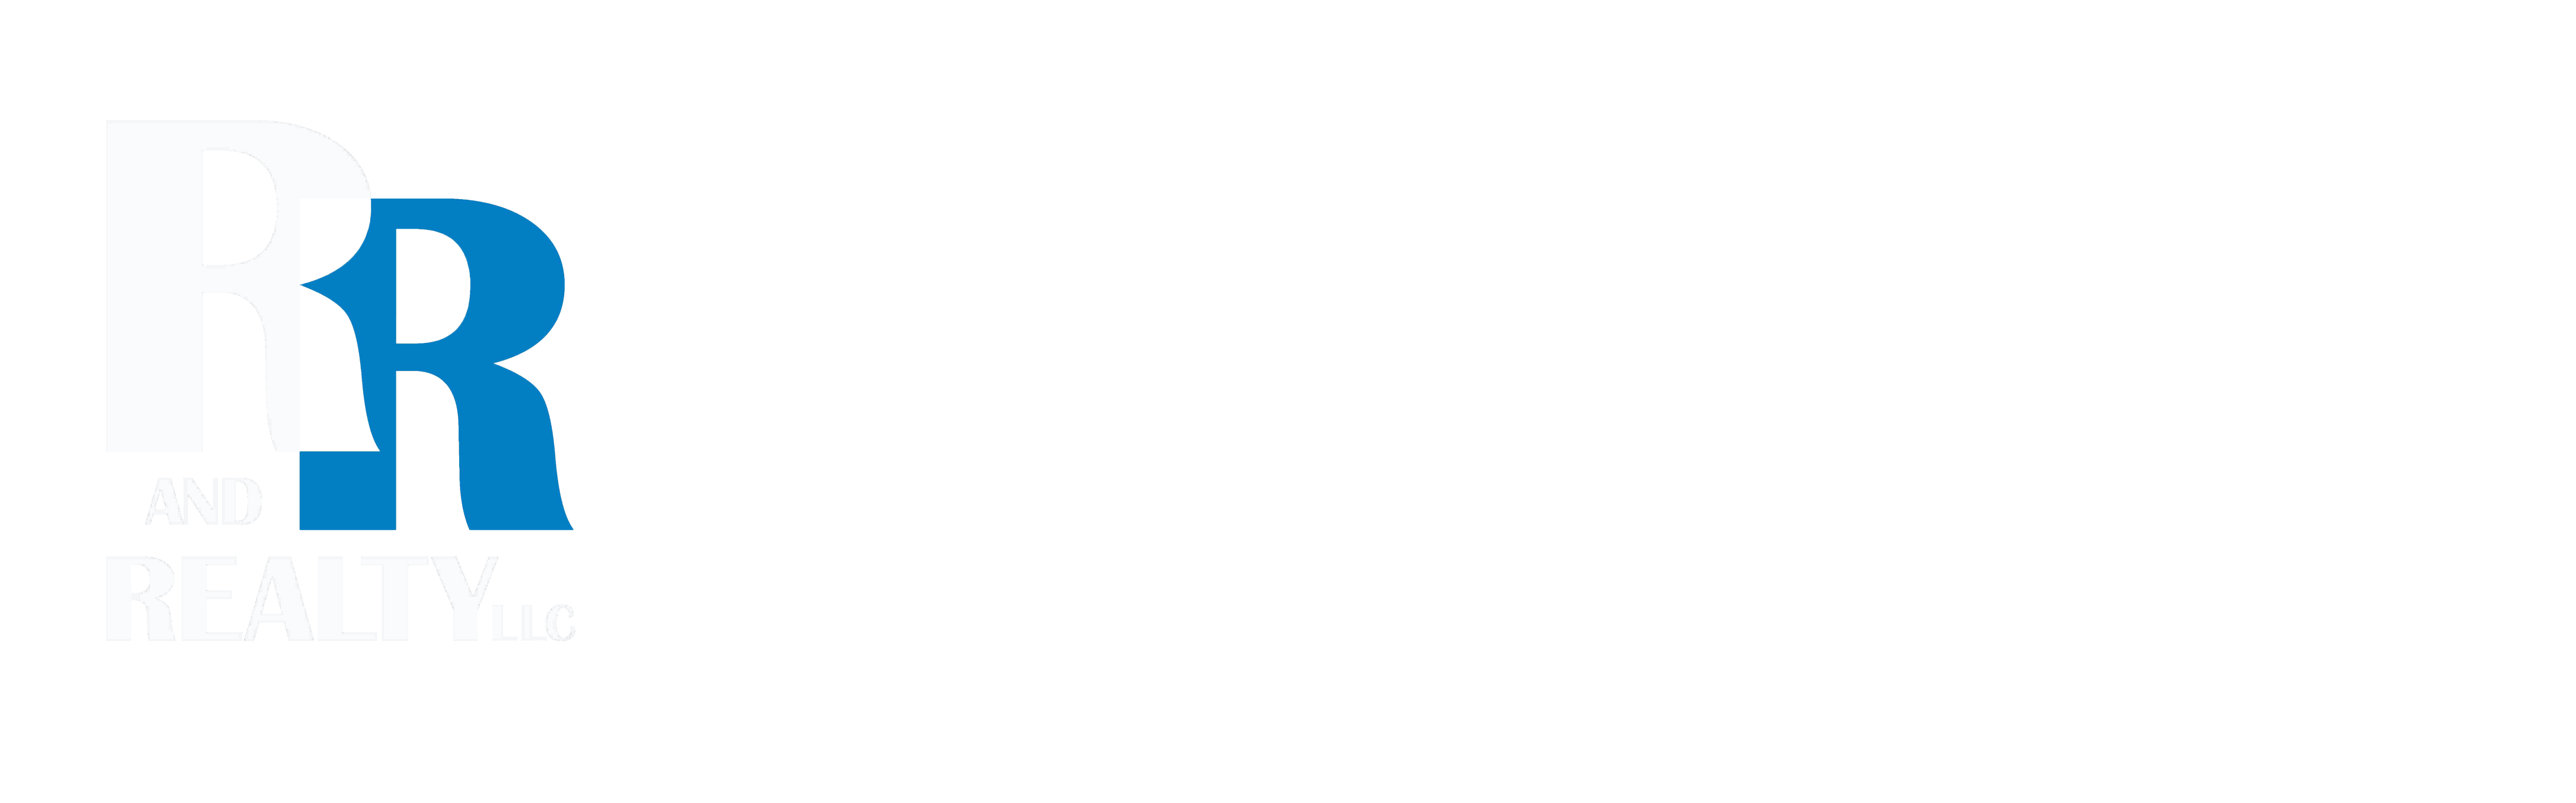 footer-logos-new